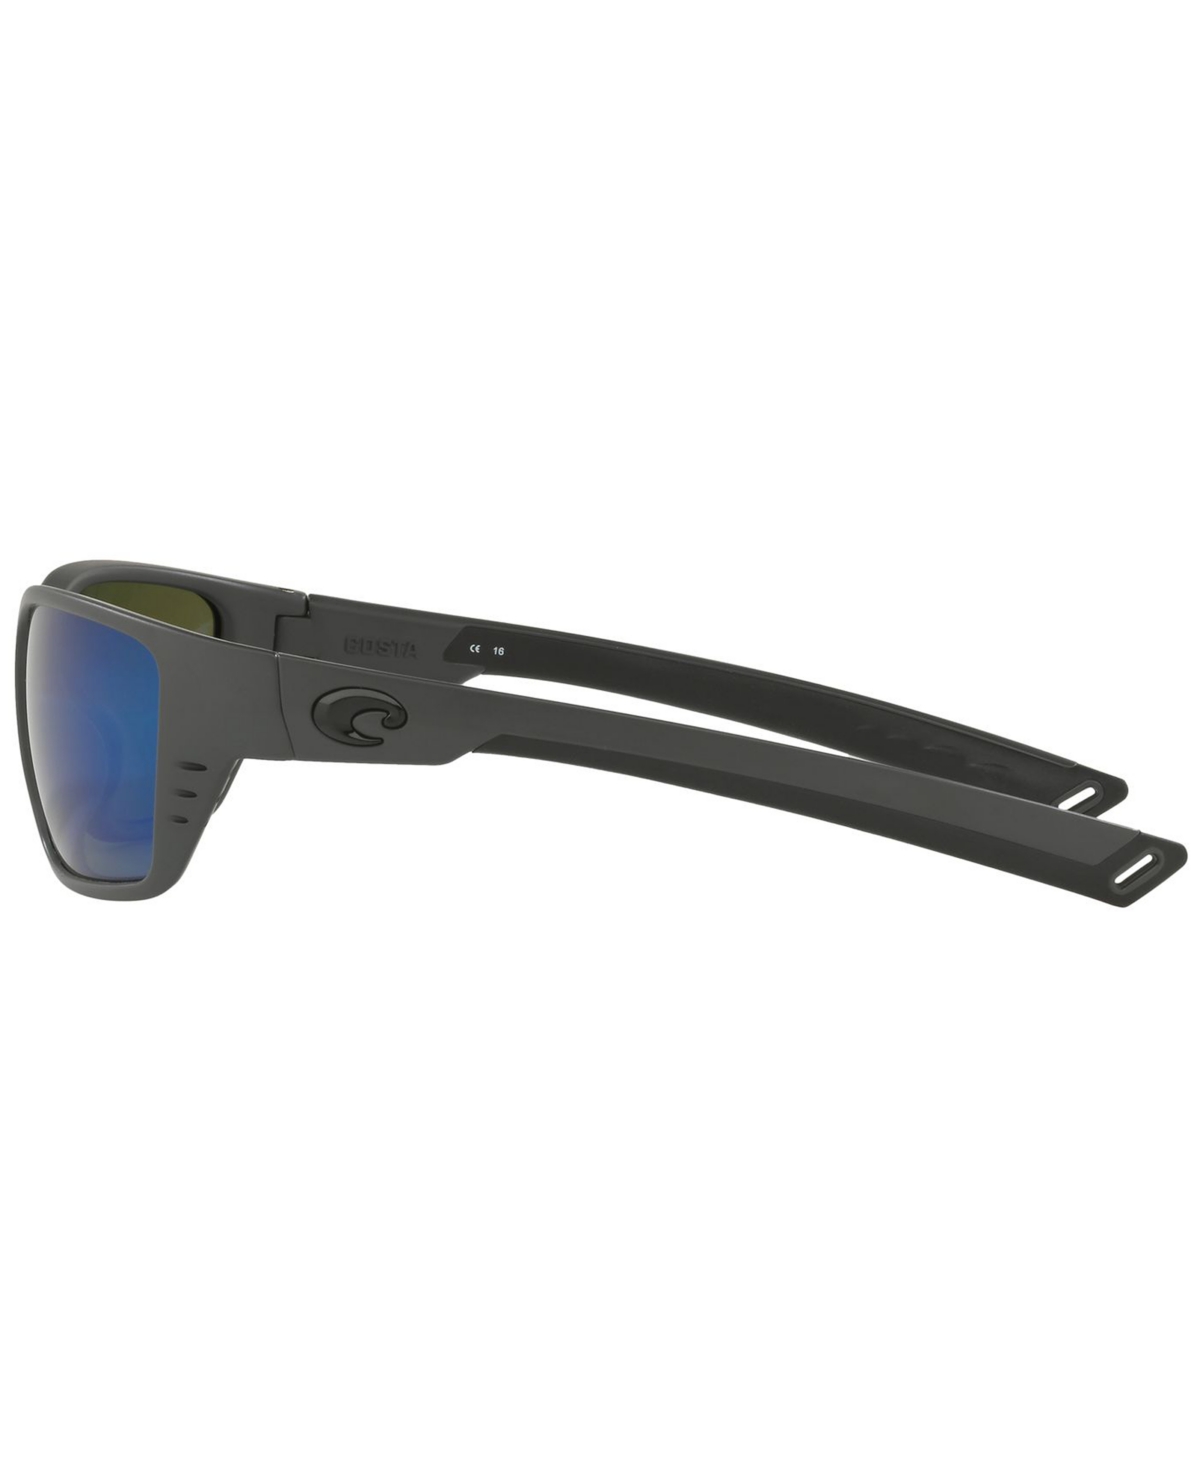 Shop Costa Del Mar Polarized Sunglasses, Whitetip 58 In Grey Matte,blue Mirror Polar